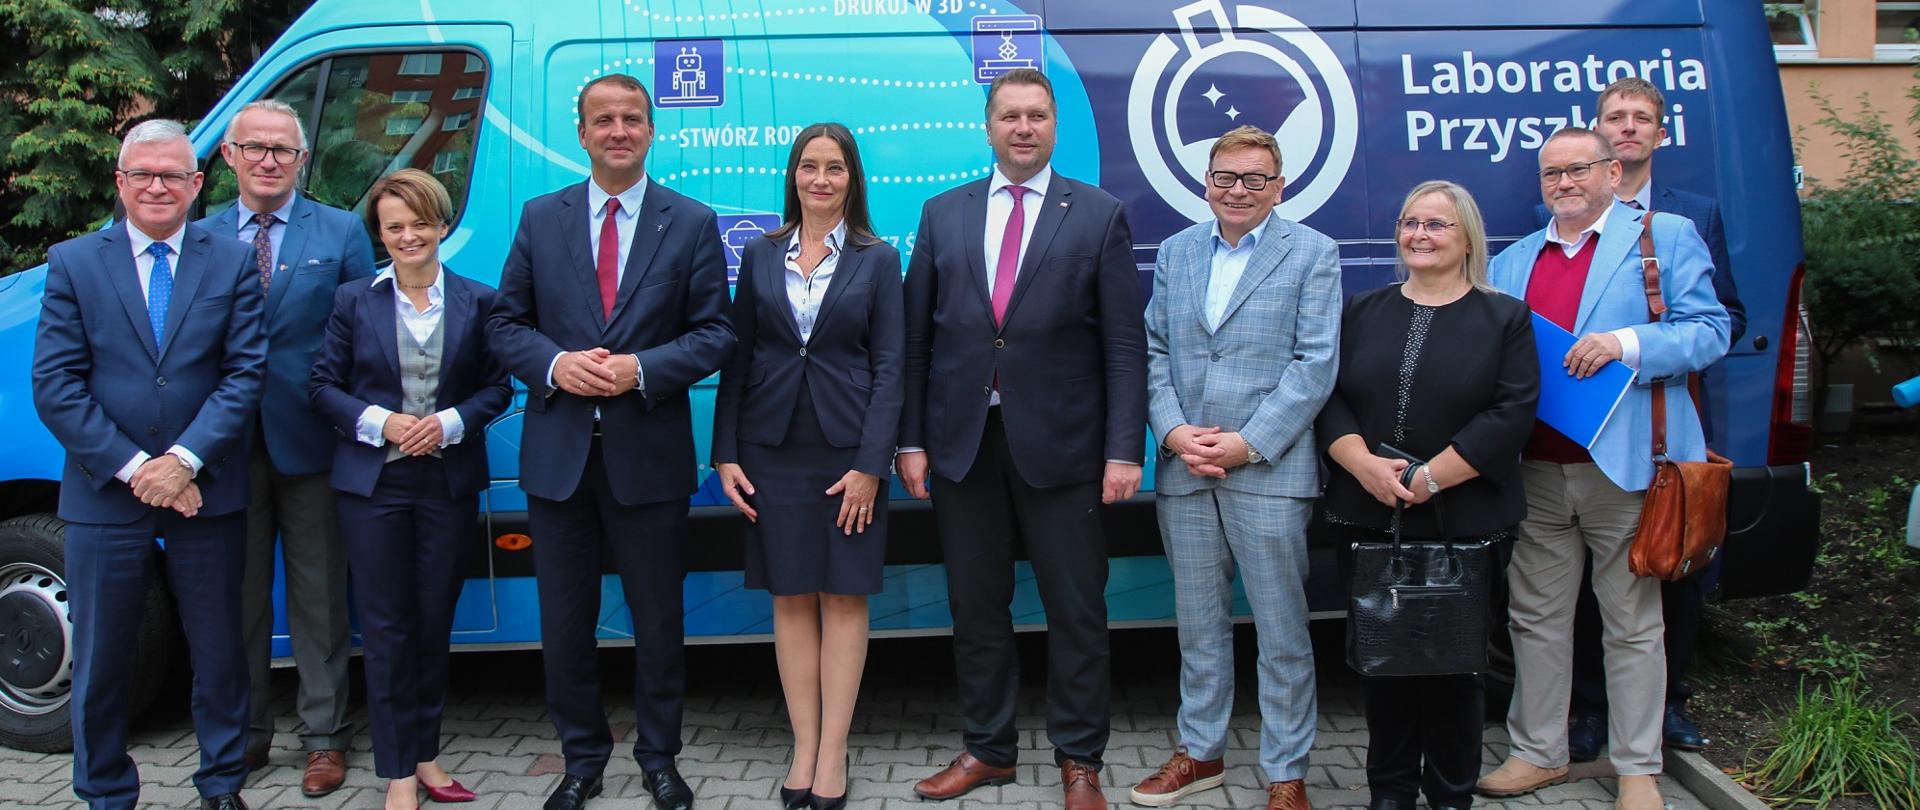 Minister w otoczeniu grupy elegancko ubranych ludzi stoi przed szkoła, za nimi niebieska furgonetka z napisem Laboratoria Przyszłości.